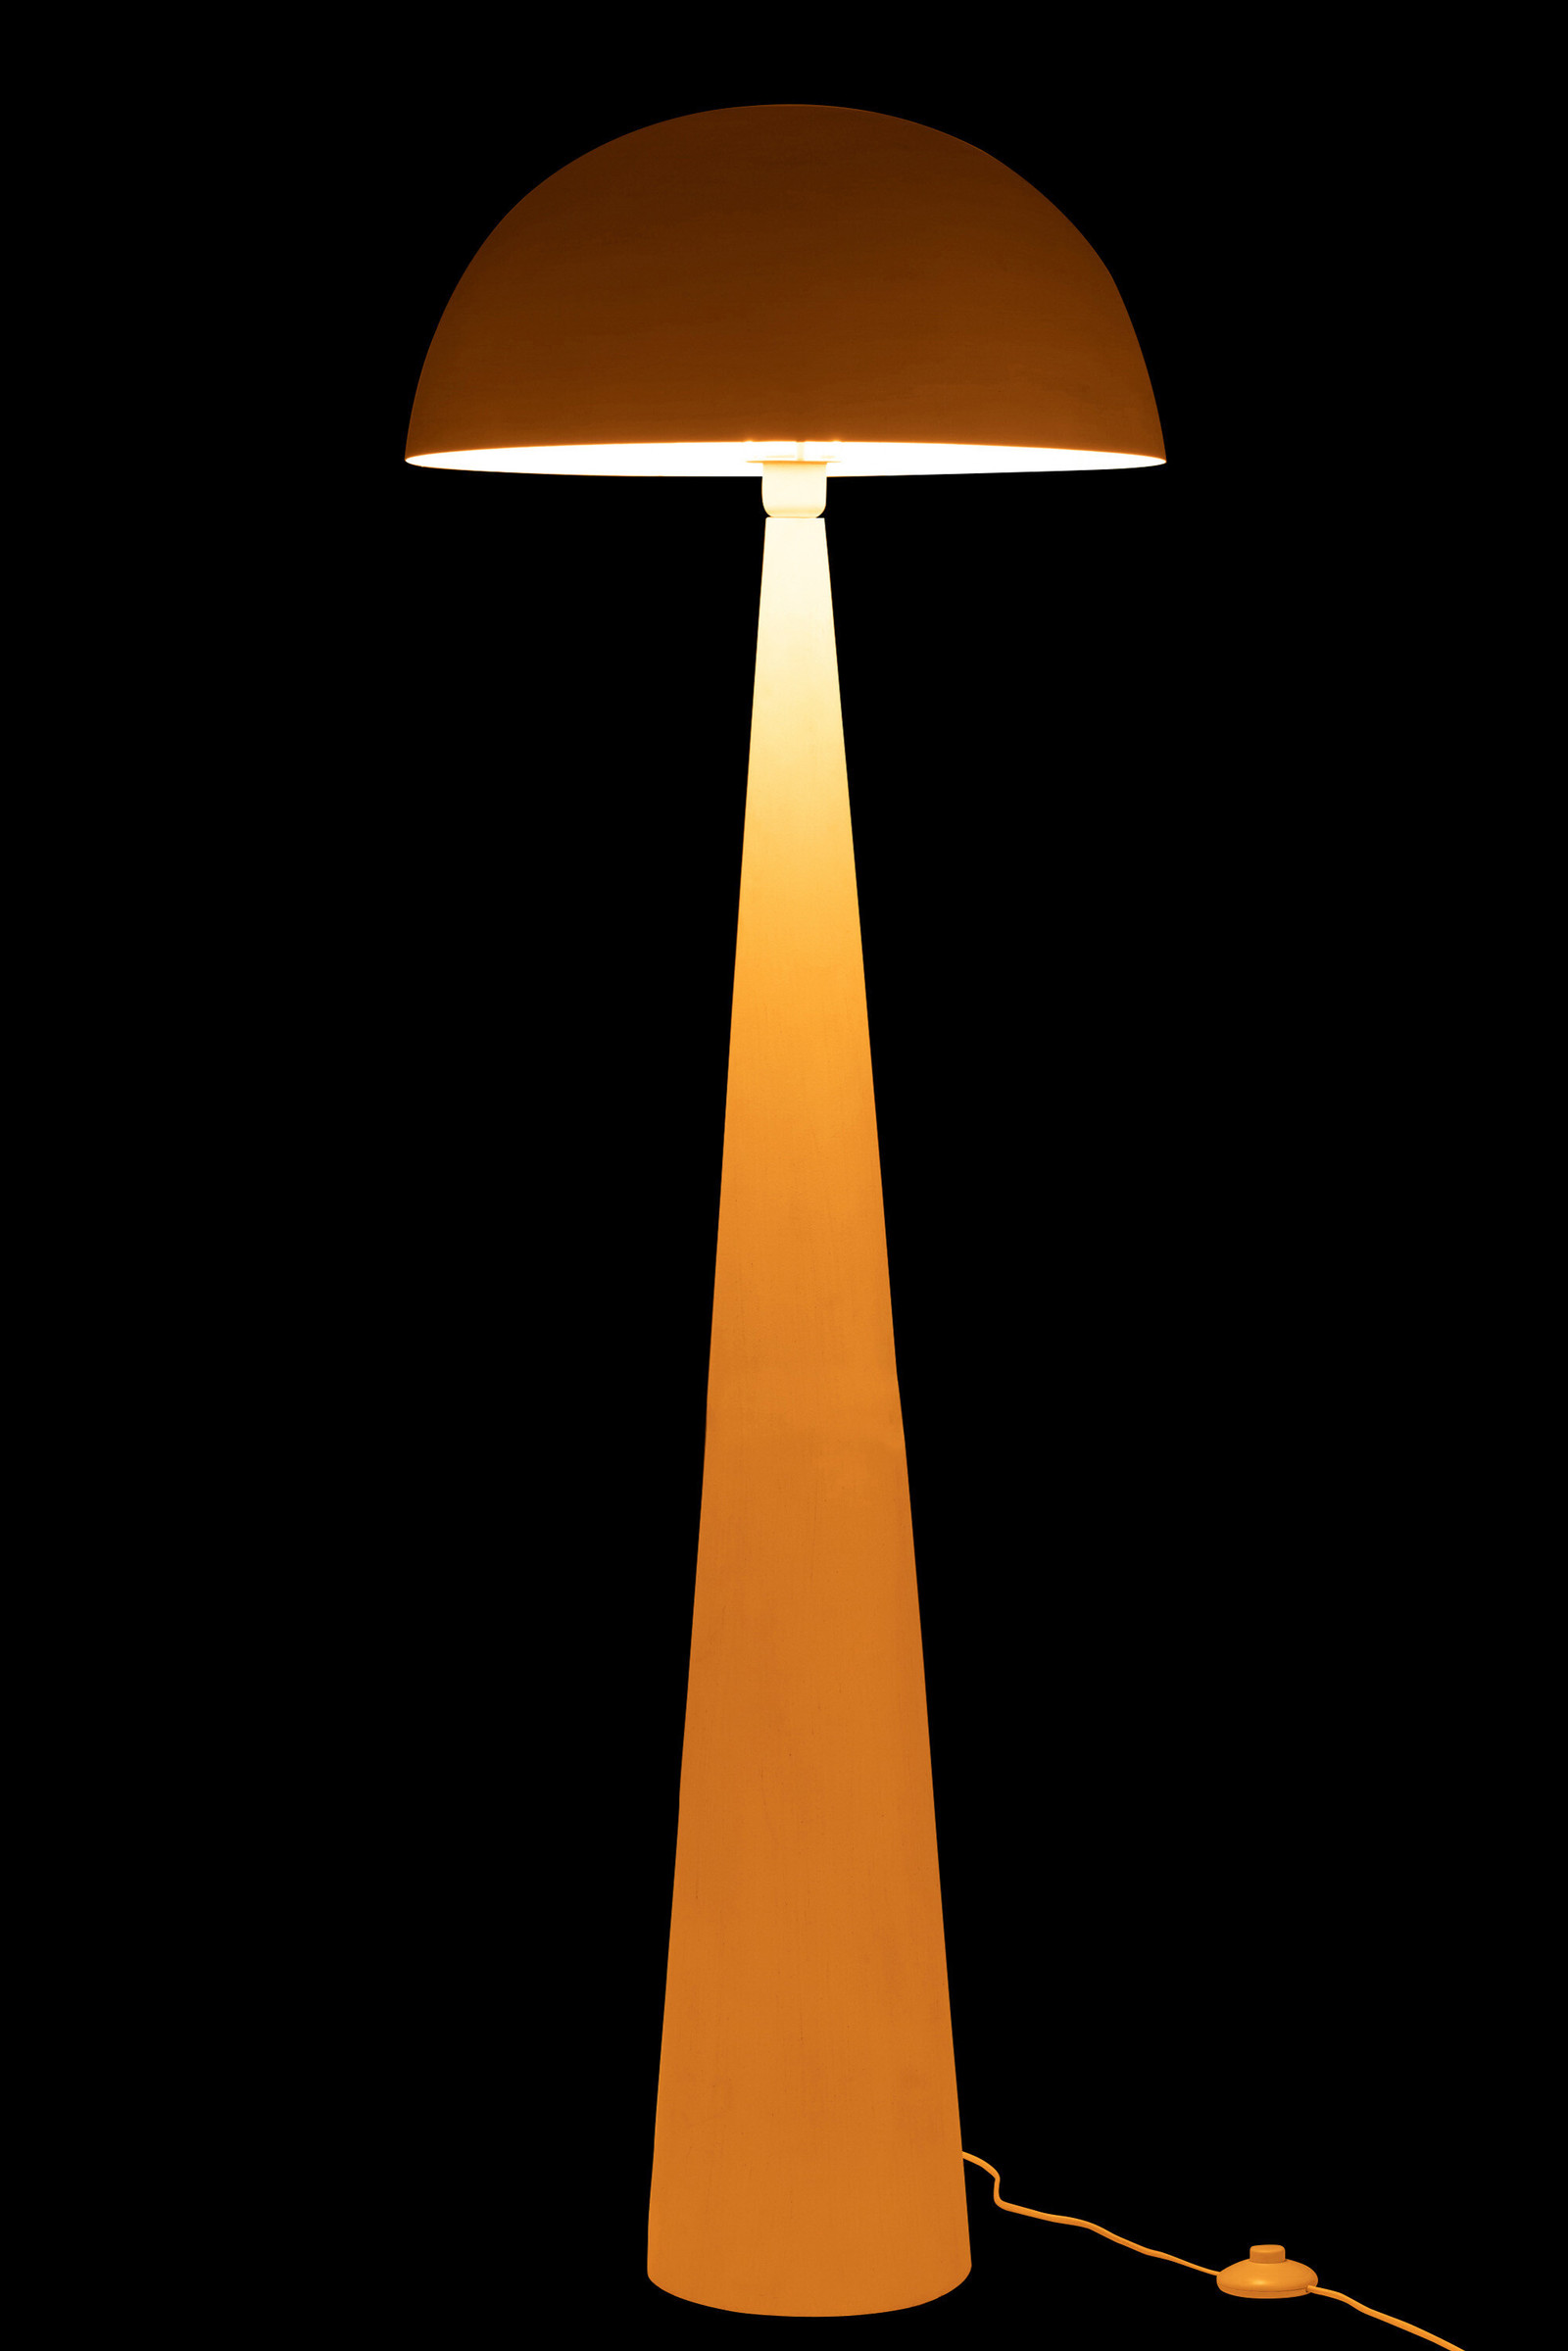 Lampe champignon en métal